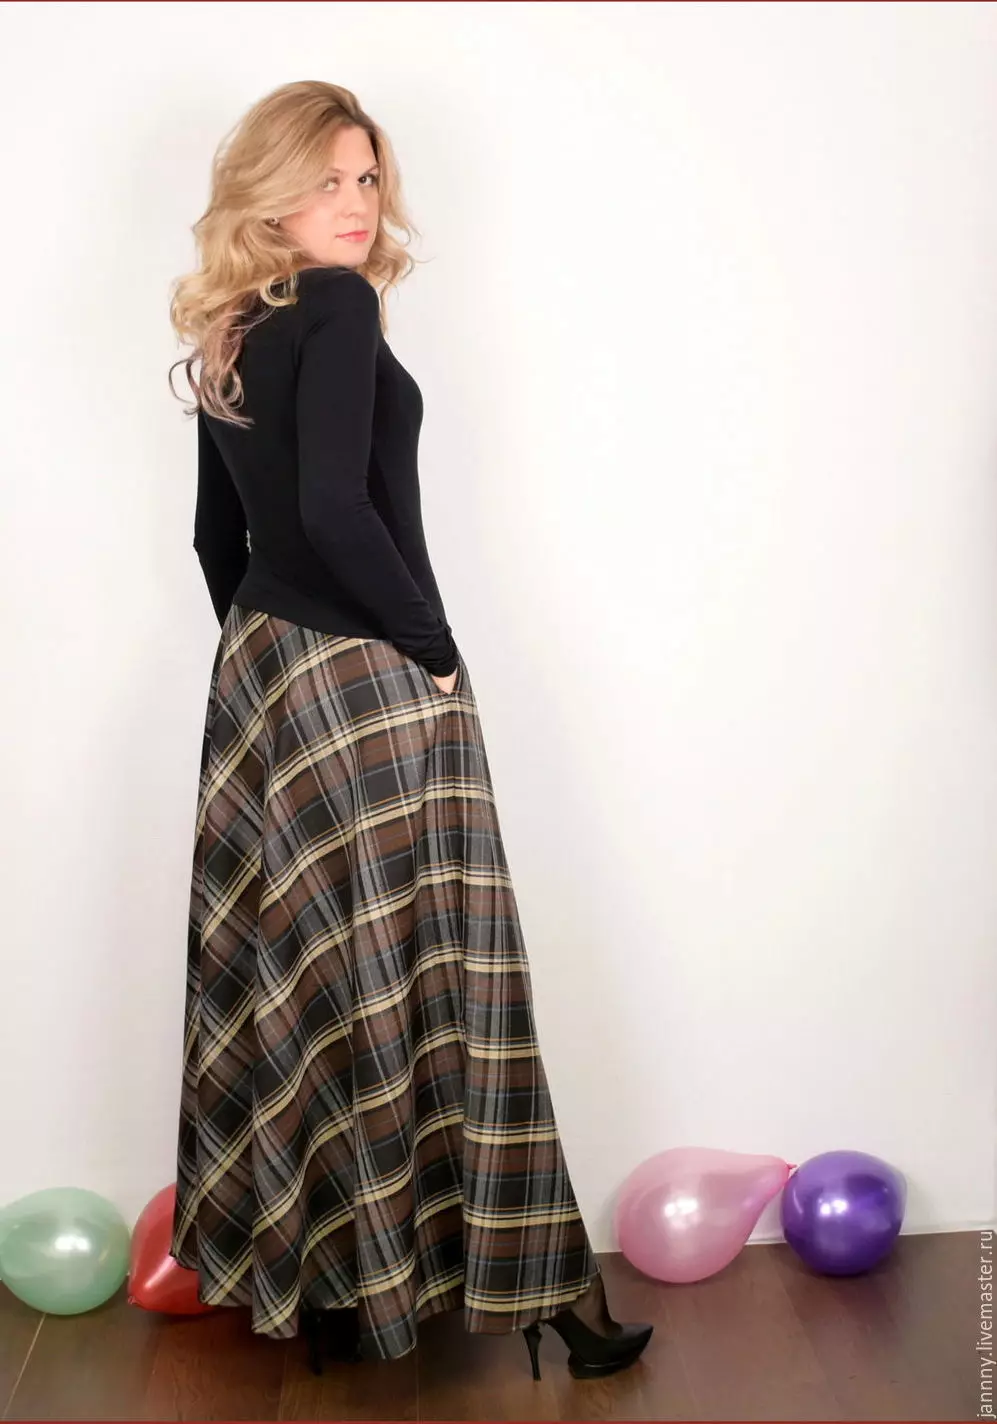 Checkered Long Skirt